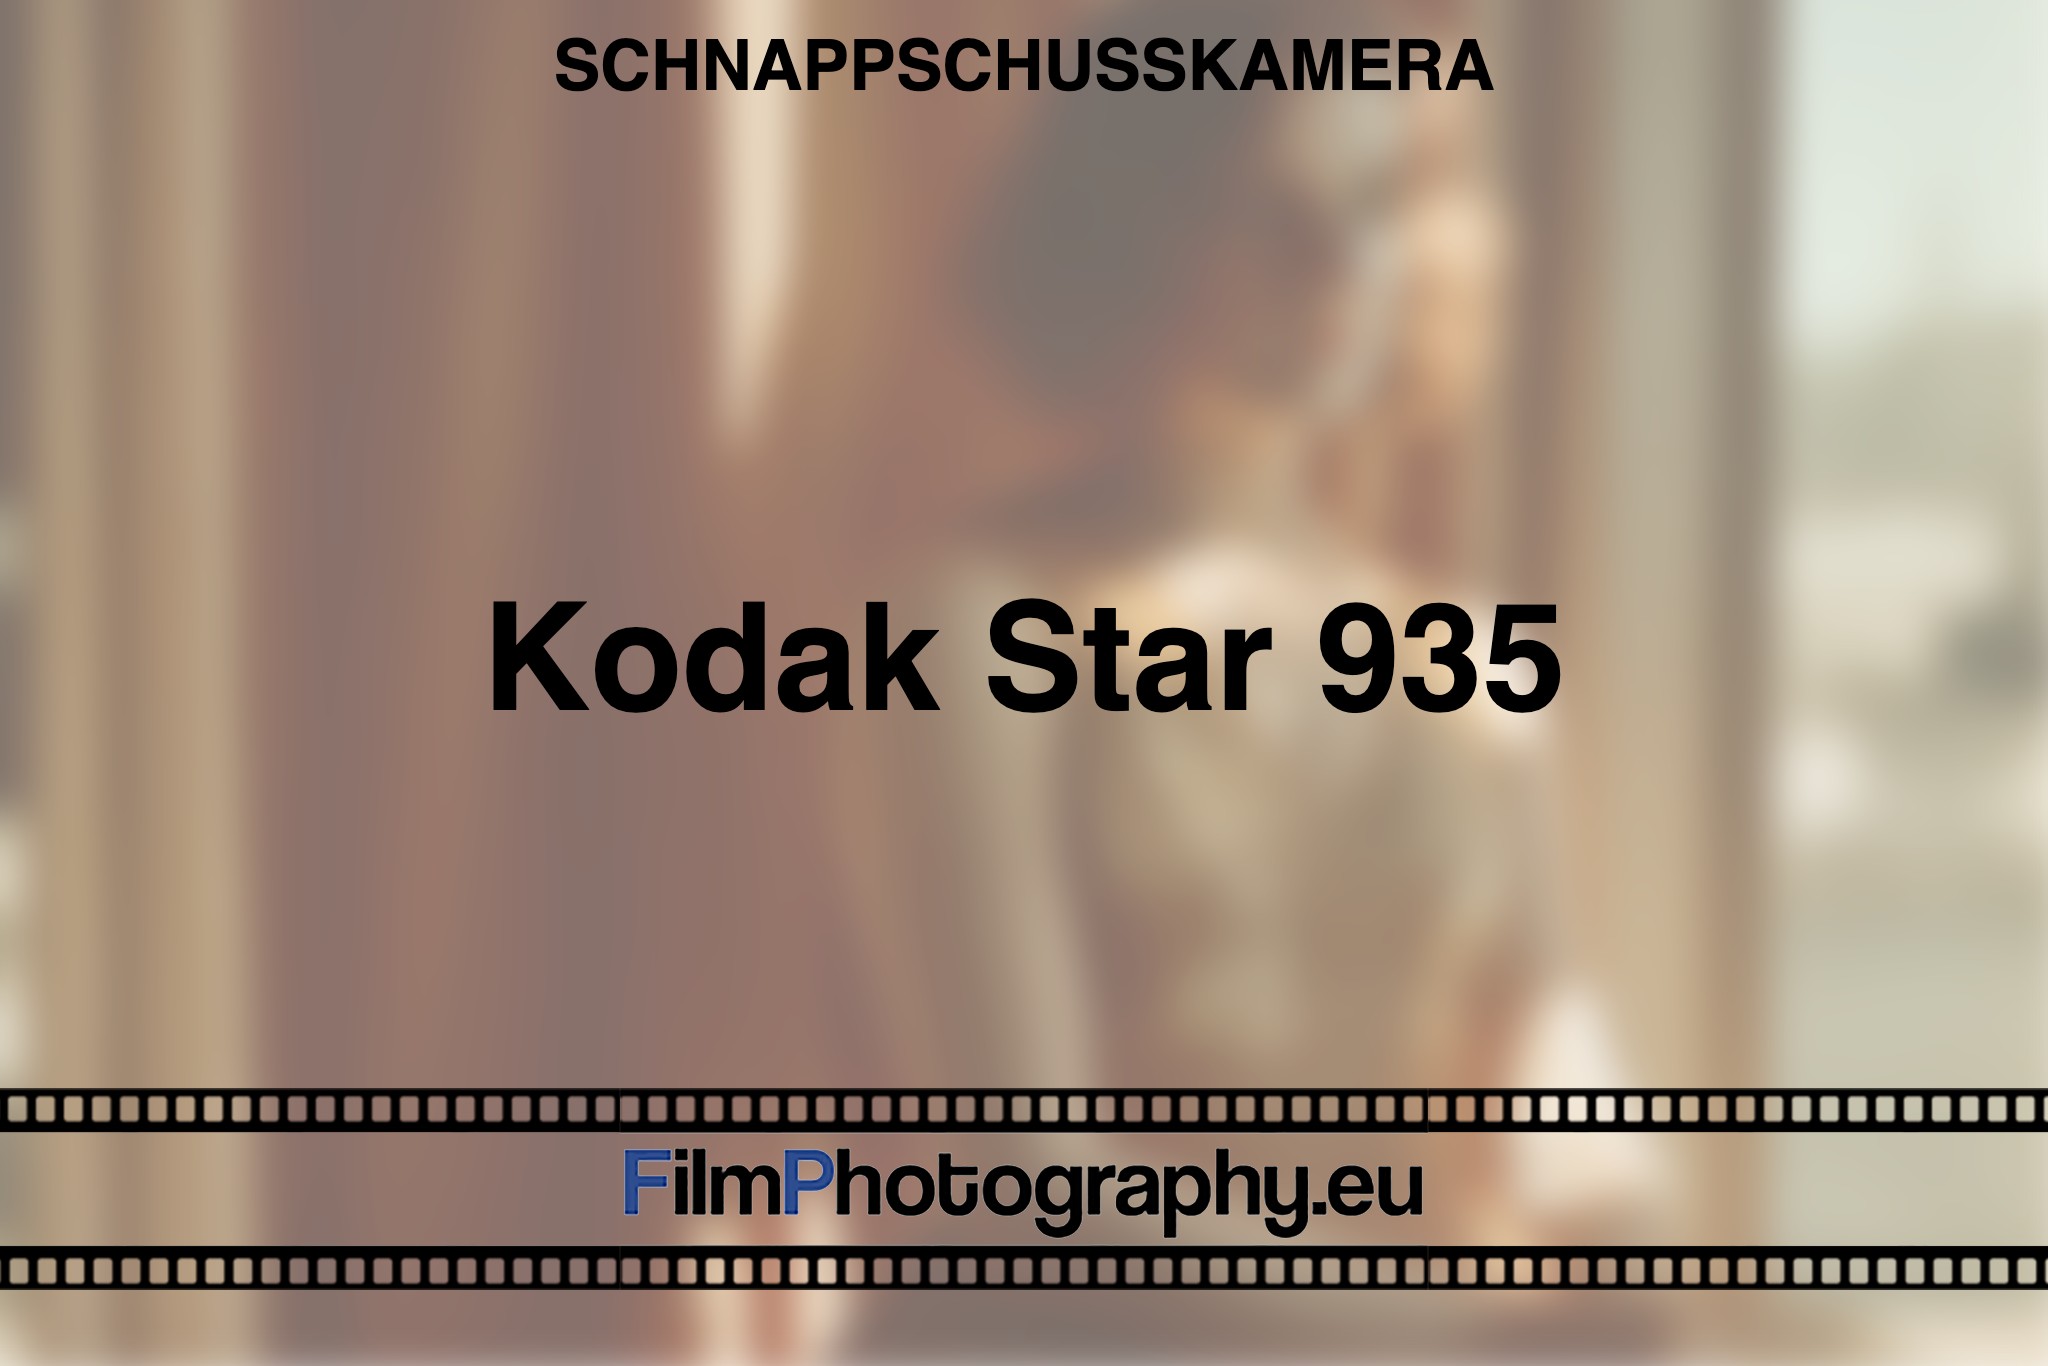 kodak-star-935-schnappschusskamera-bnv